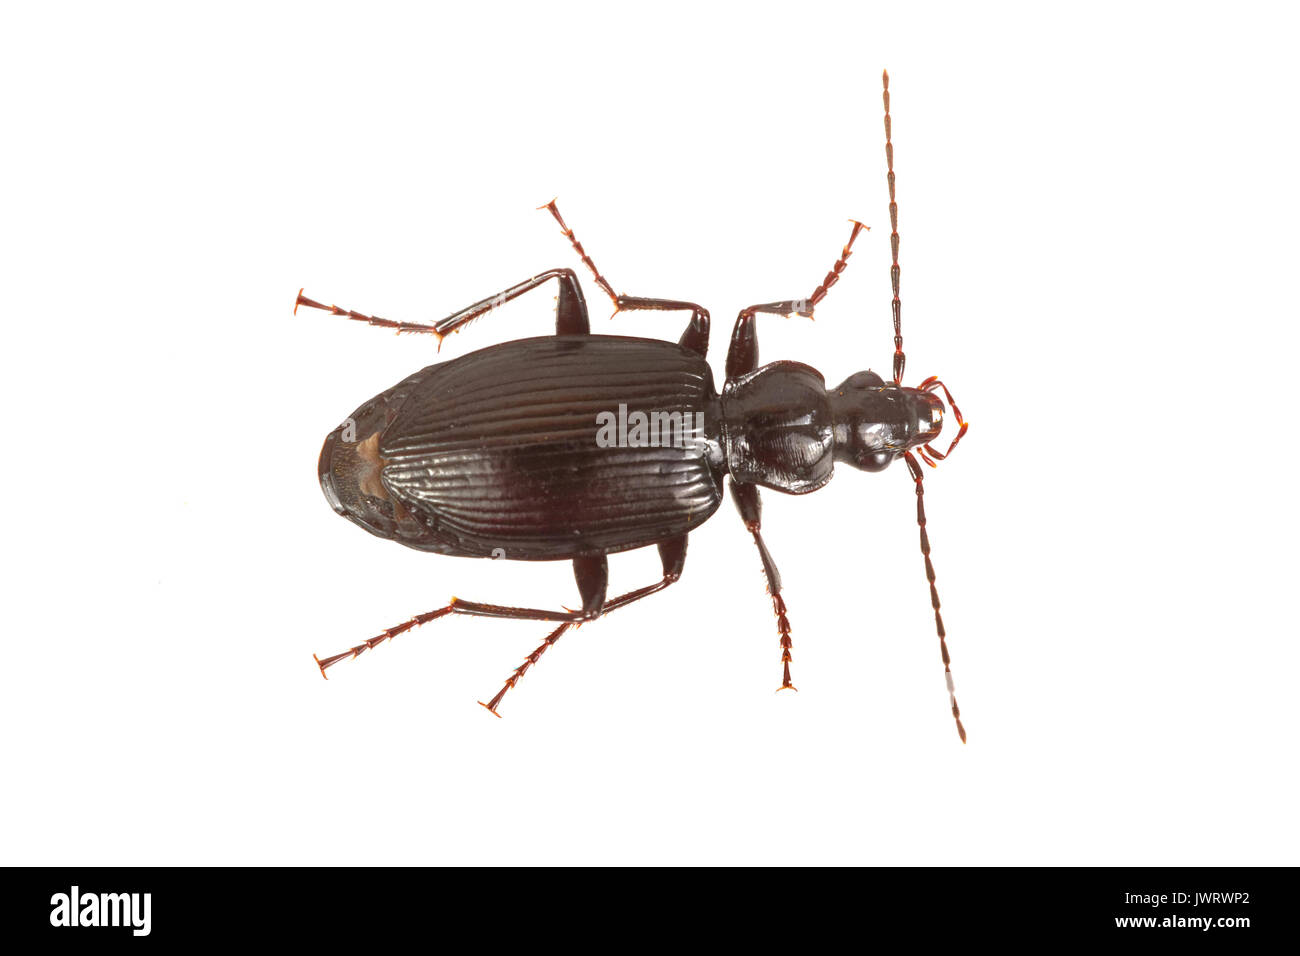 Ground beetle (Limodromus assimilis) isolated on a white background Stock Photo